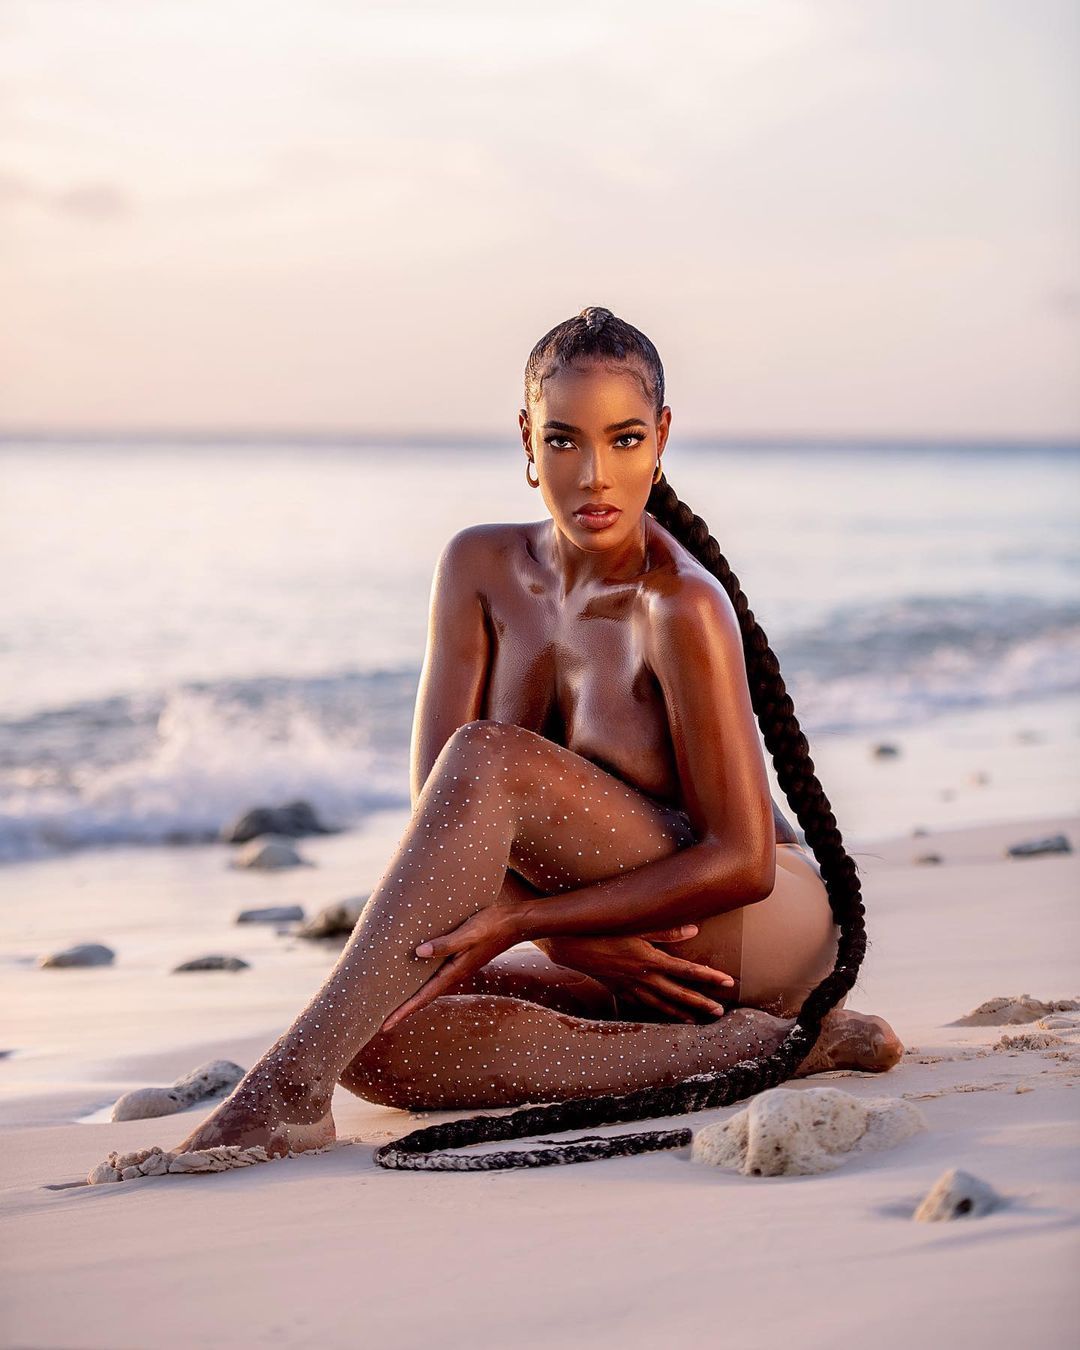 Monifa Jansen Nude LEAKED & Sexy (280 Photos & Video)